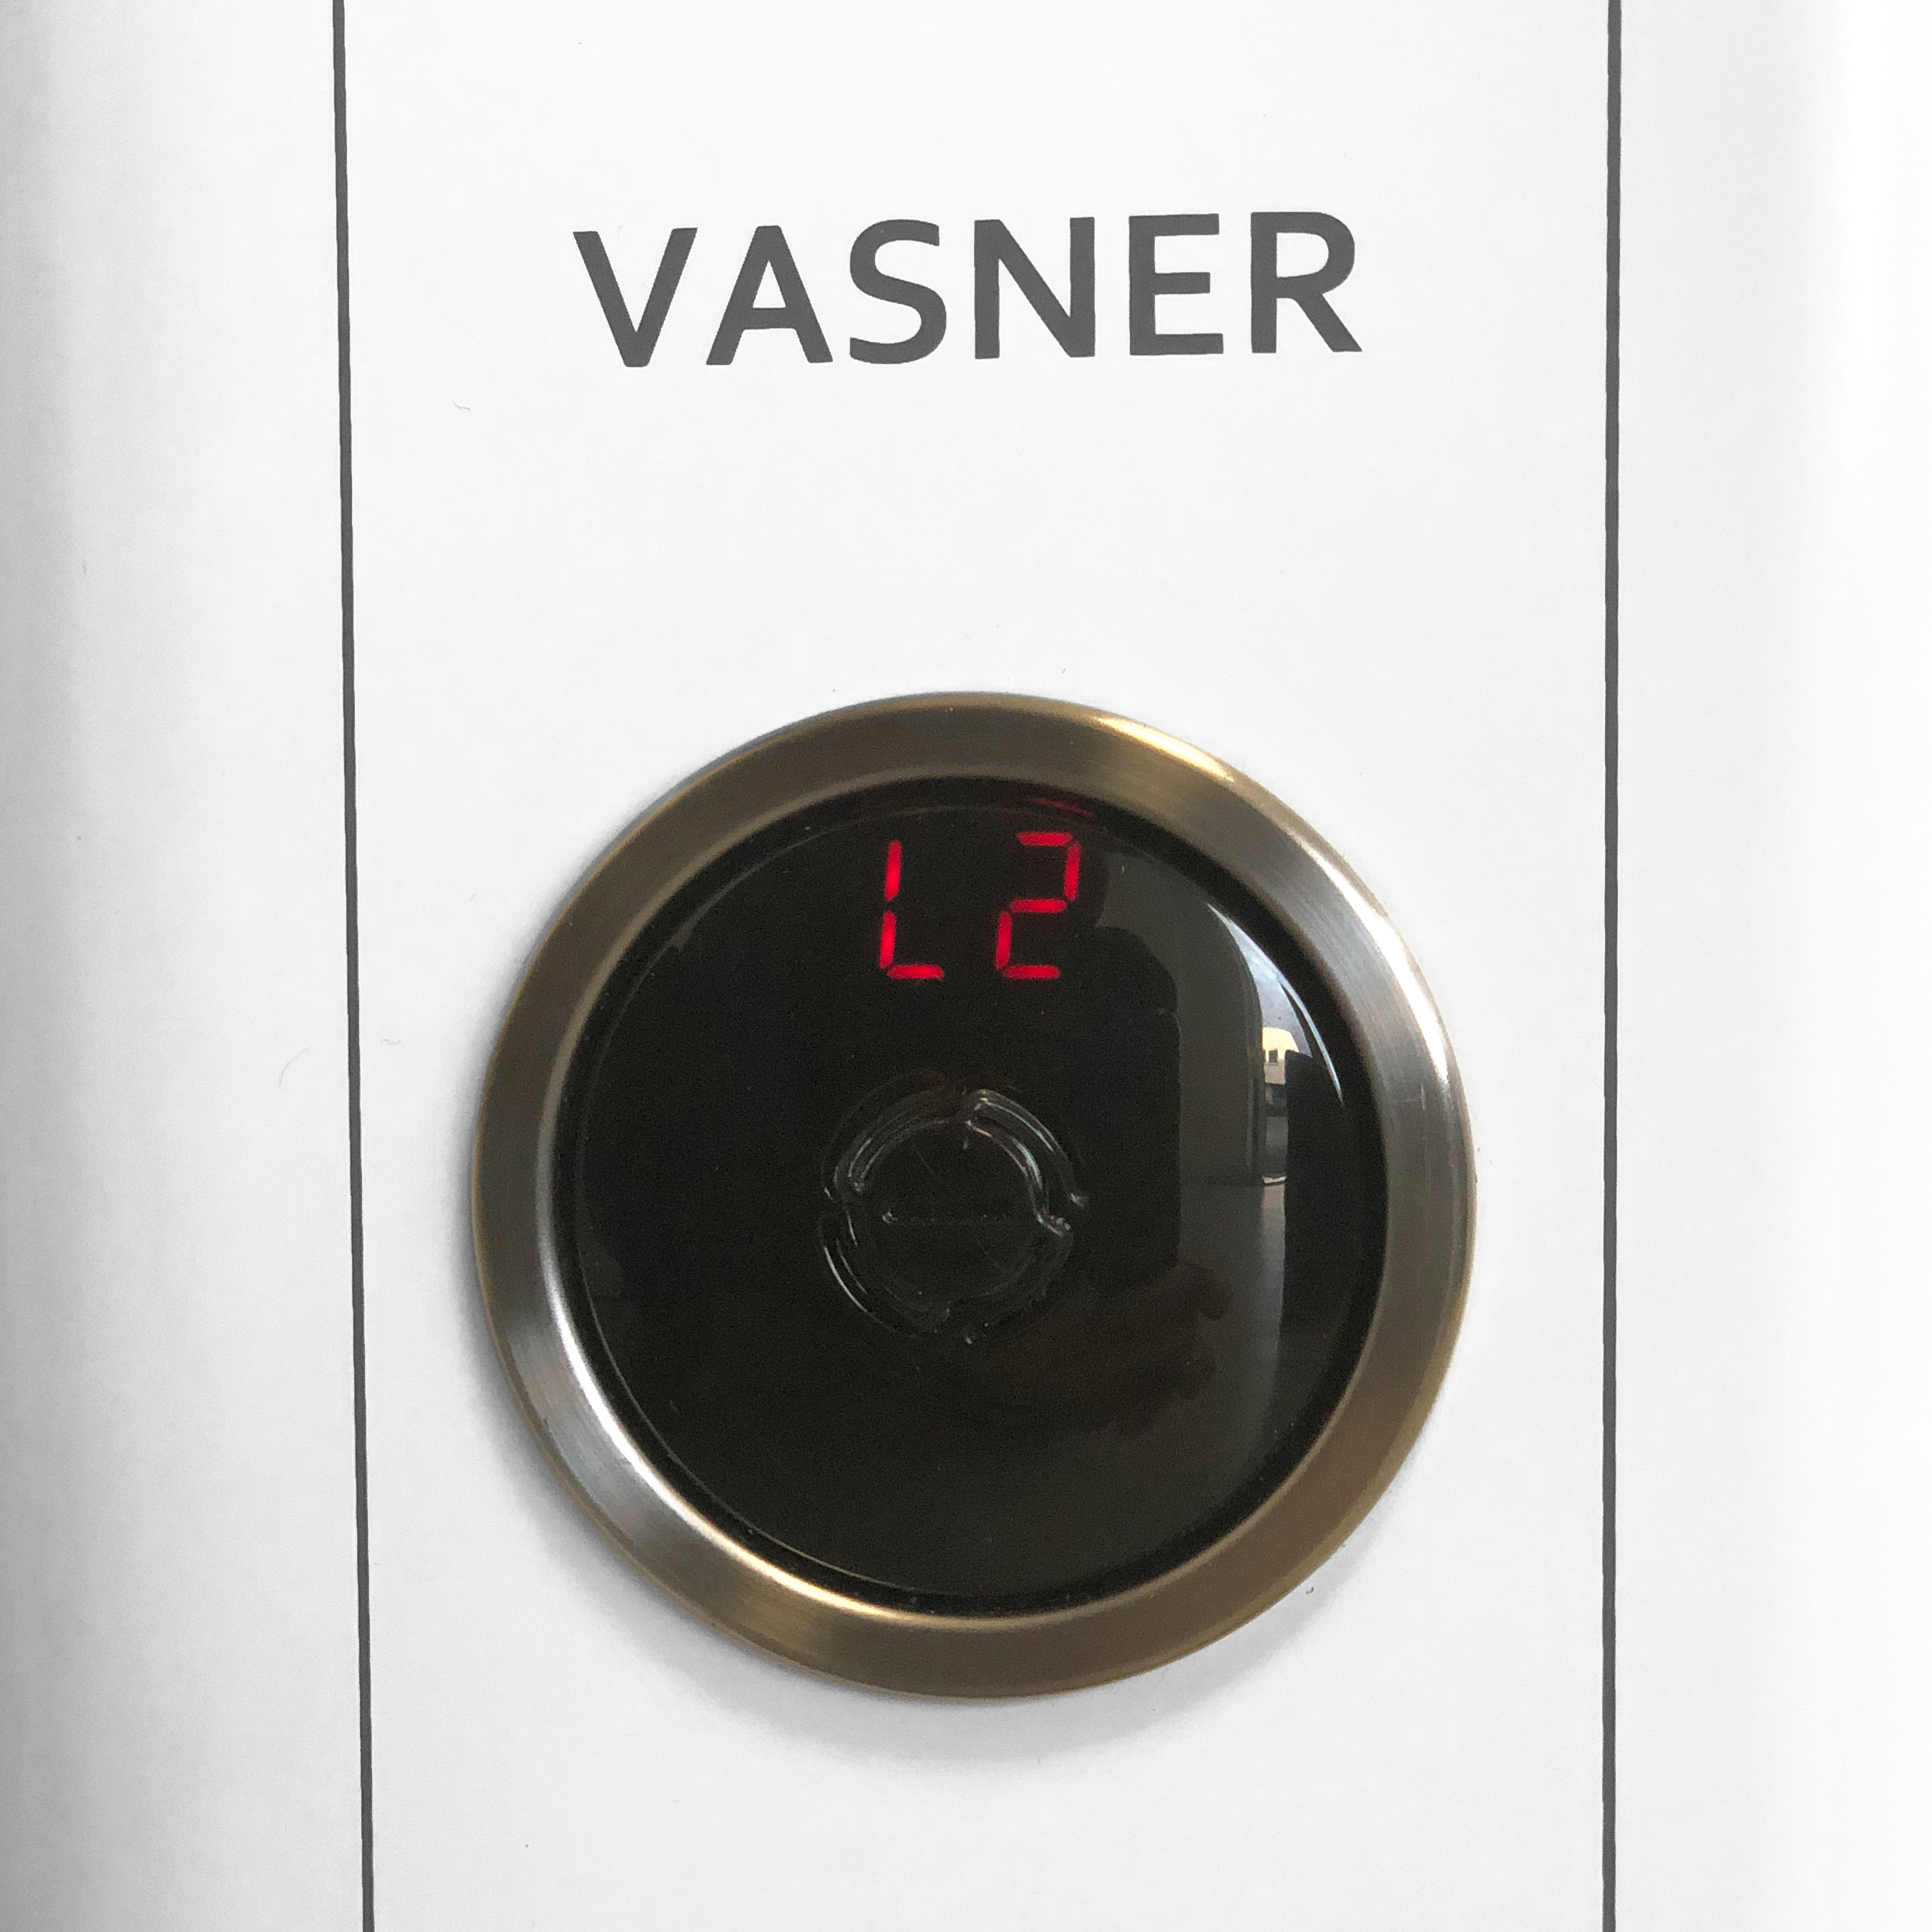 VASNER 23R (2300 Terrassenstrahler Standheizstrahler StandLine Infrarot Watt)